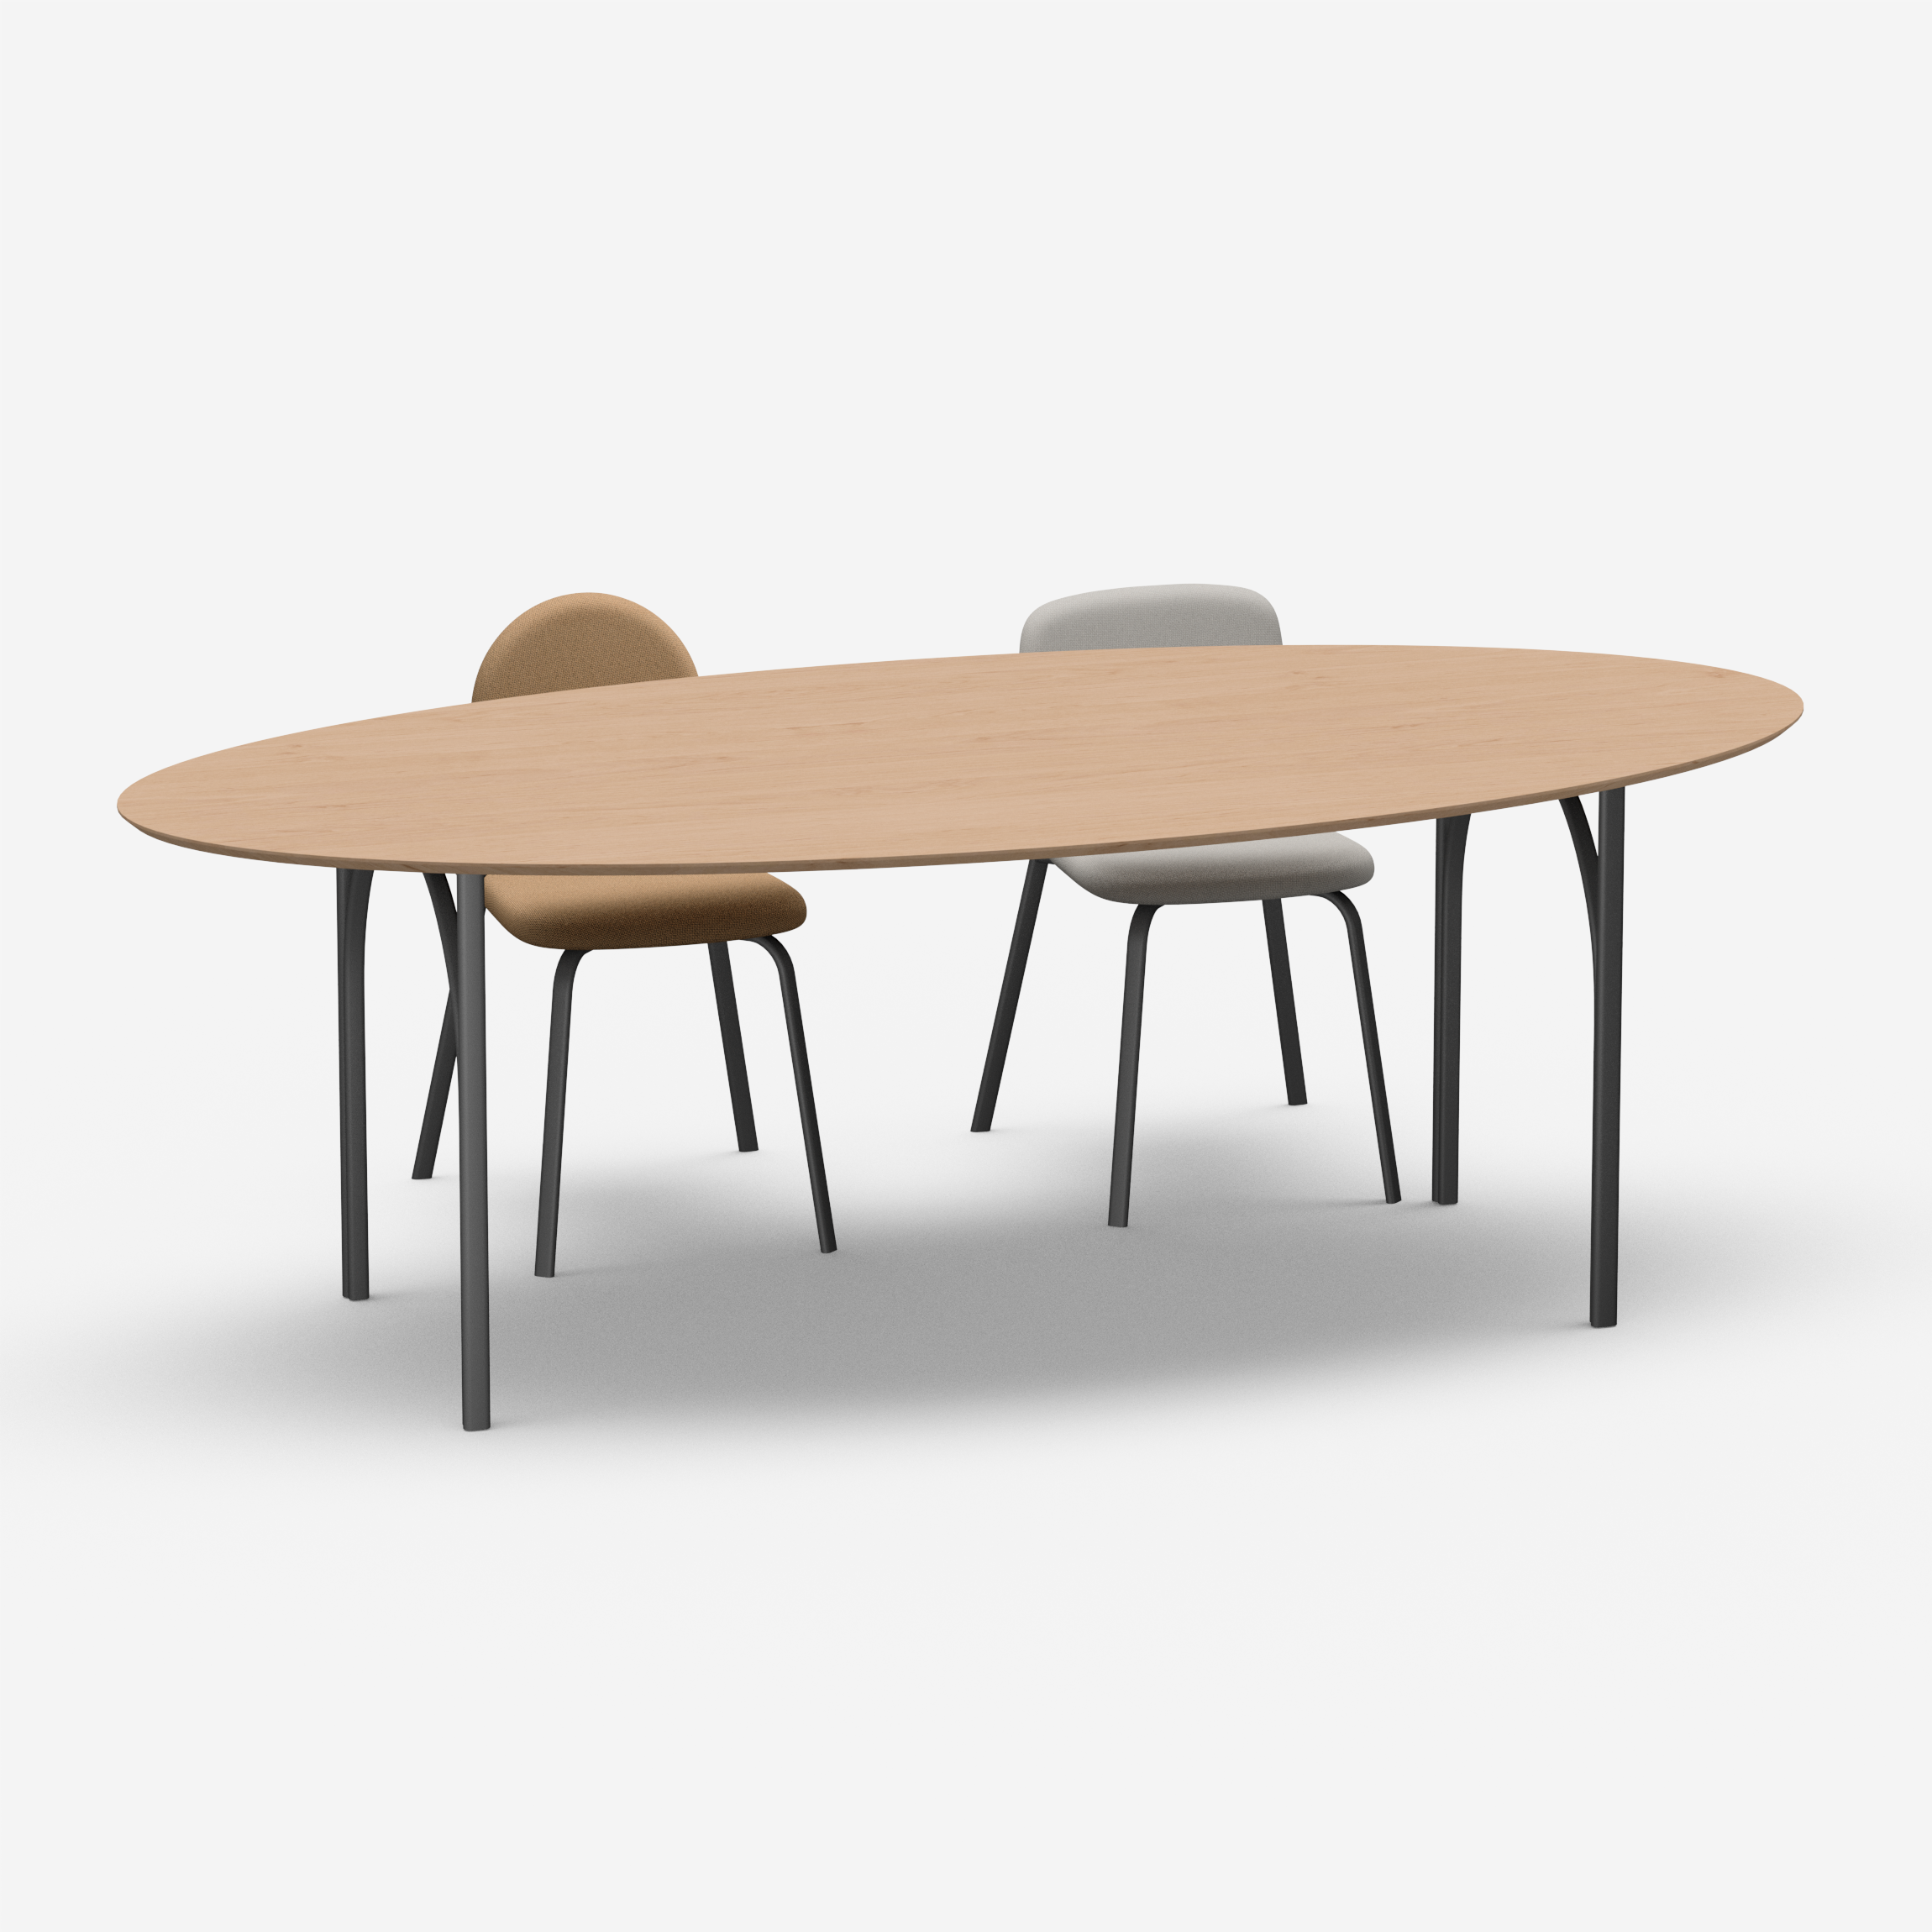 Loop - Table (Oval, 240N)